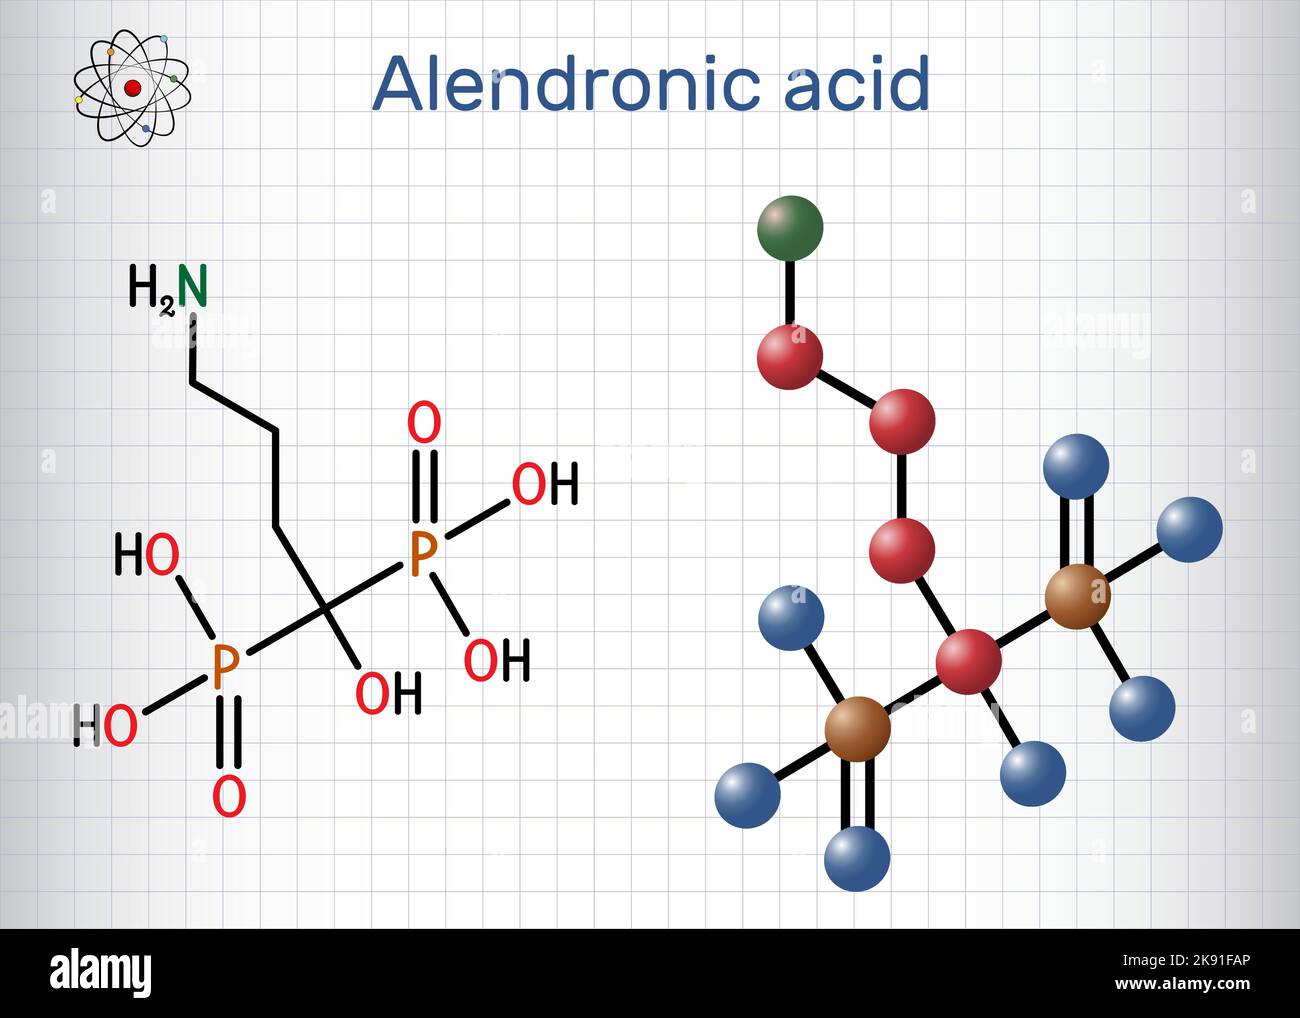 Alendronsäure-Molekül. Es ist ein Bisphosphonat-Medikament, das zur Behandlung von Osteoporose verwendet wird. Strukturelle chemische Formel, Molekülmodell. Blatt Papier i Stock Vektor